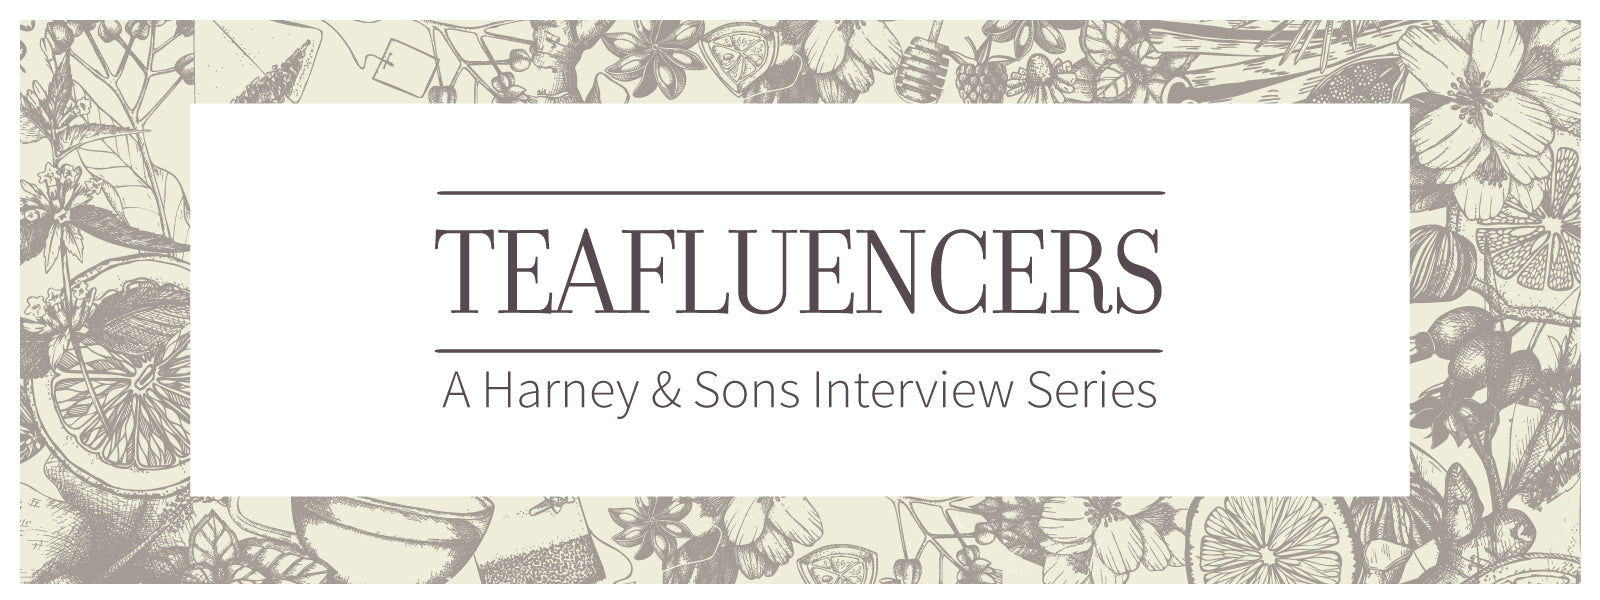 Harney & Sons Teafluencer Dorothy Shain